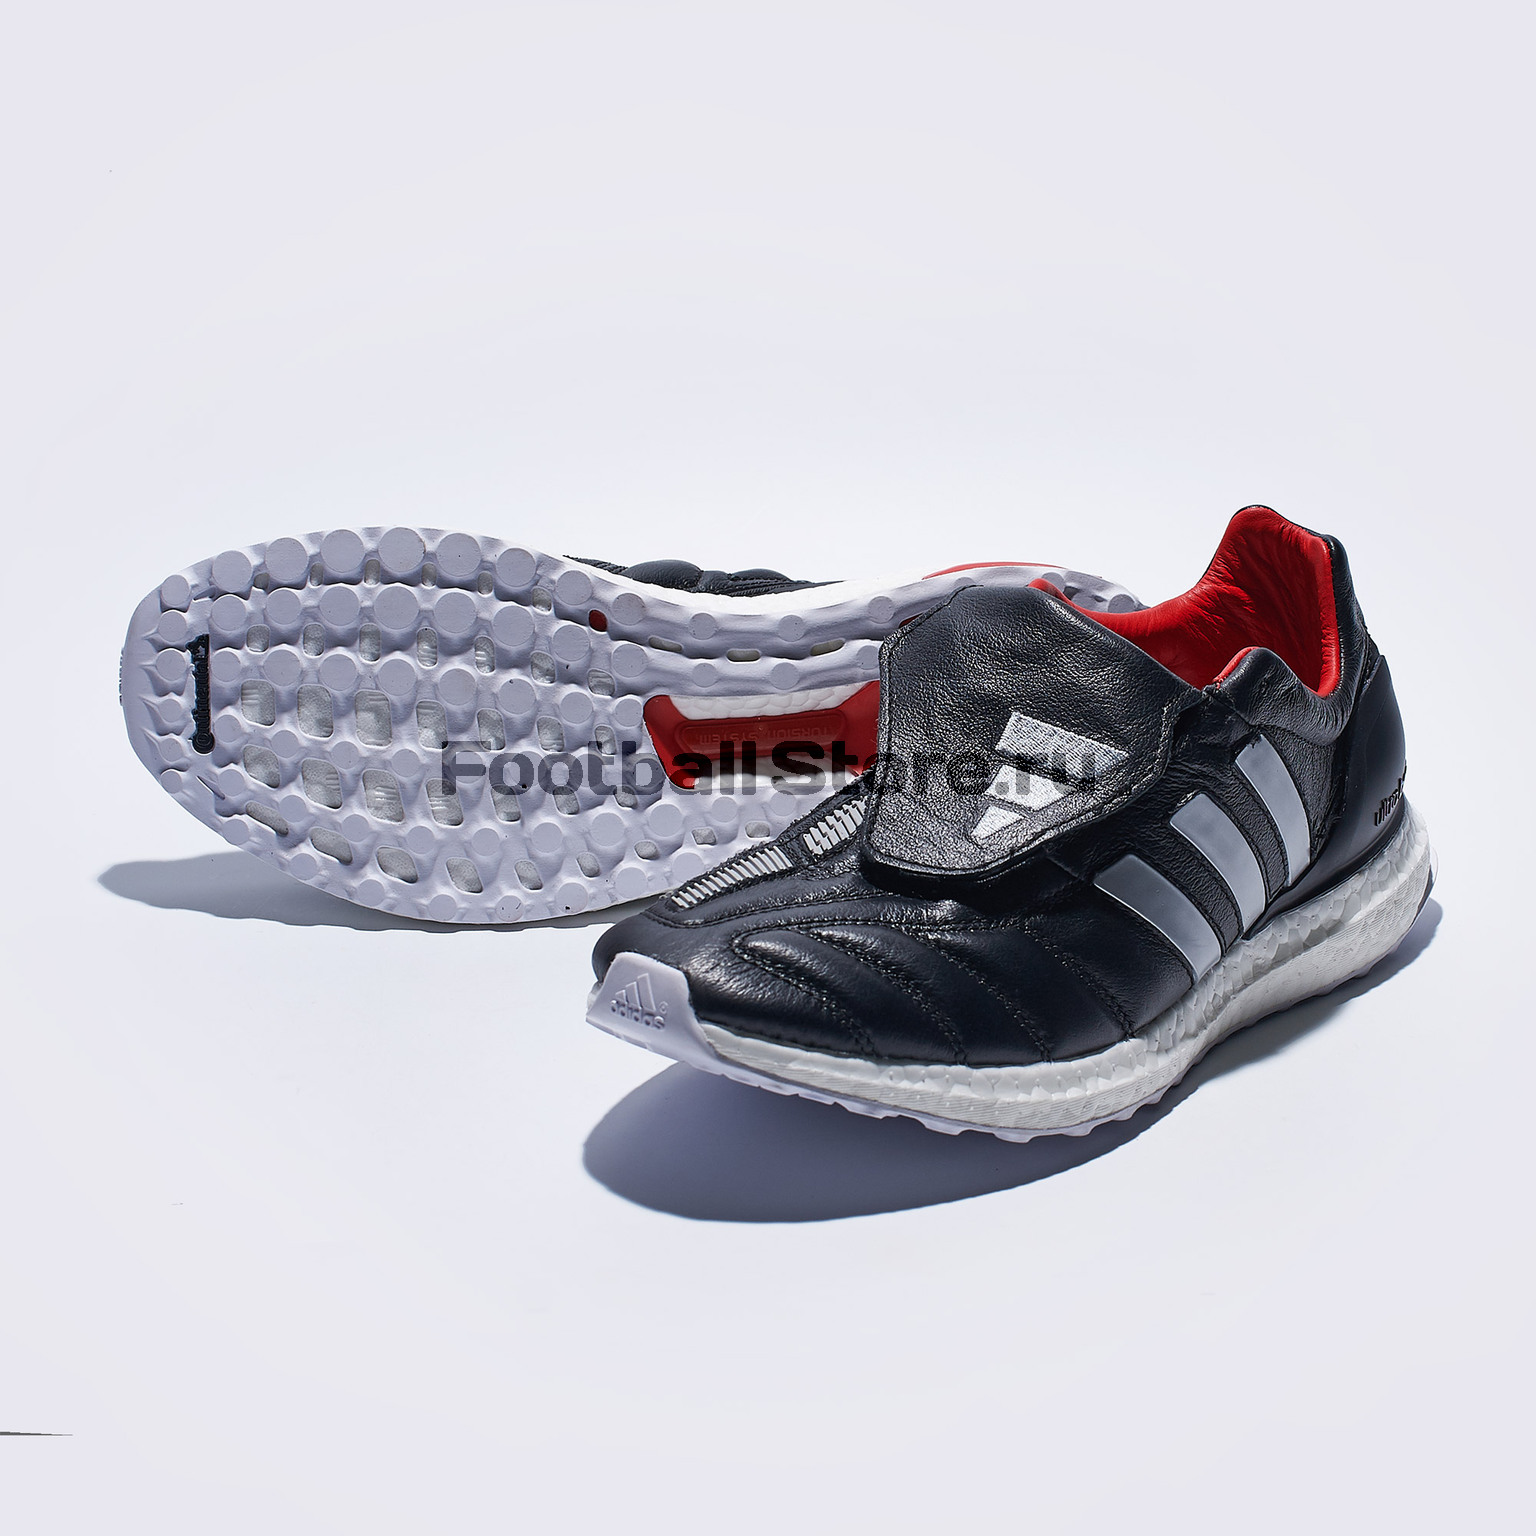 Футбольная обувь Adidas Predator Mania TR EF4015